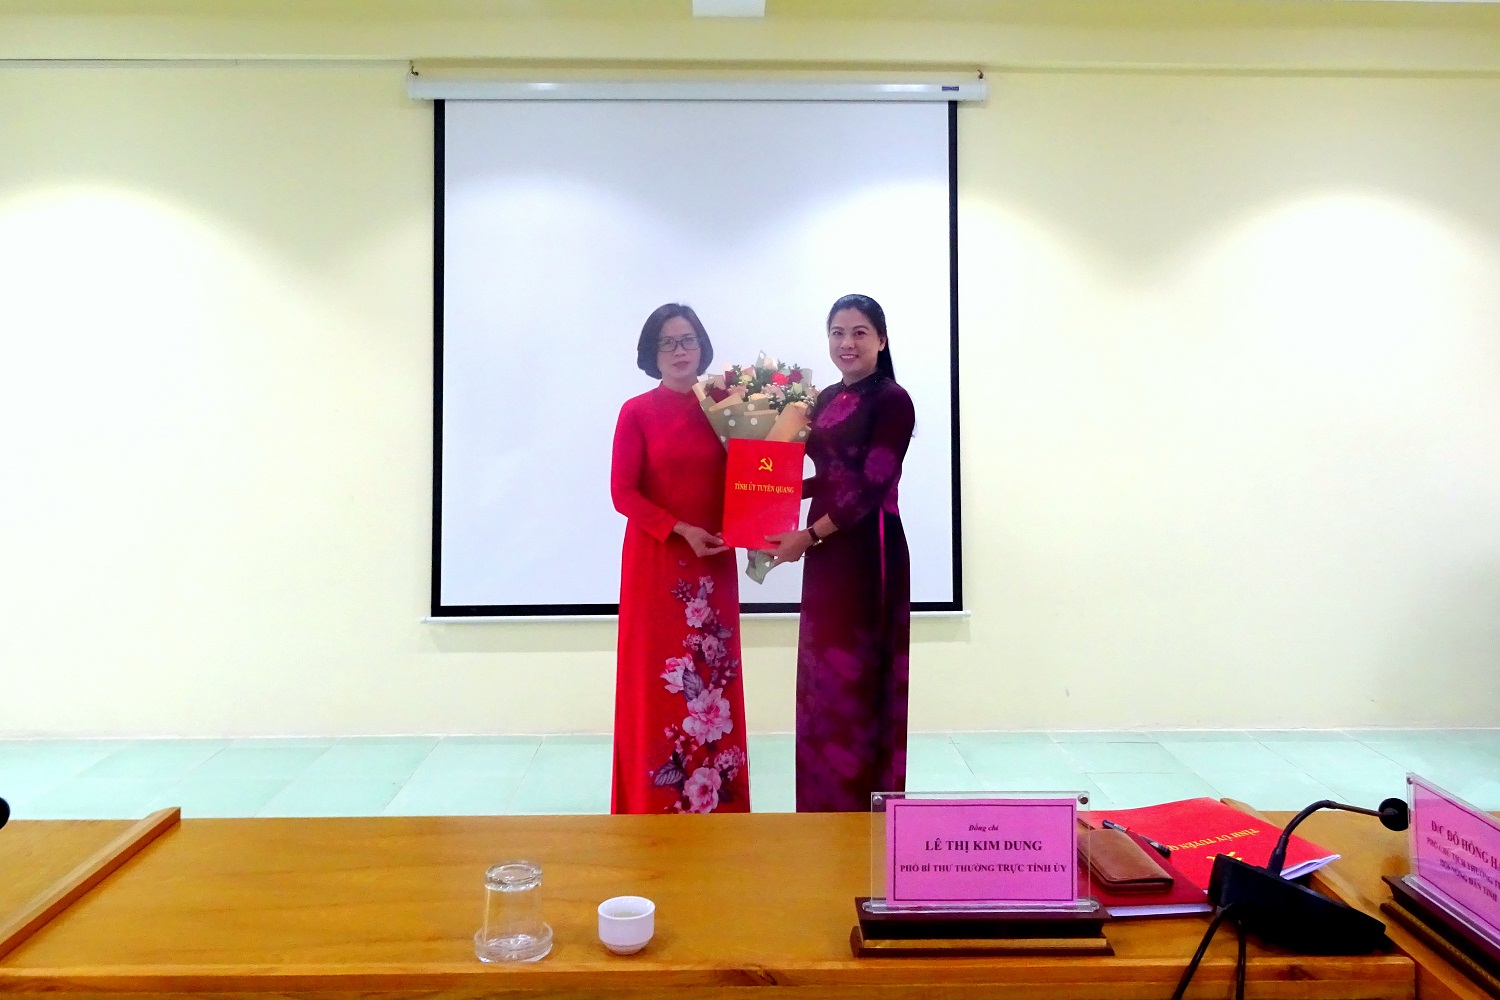 Đồng chí Lê Thị Kim Dung - Phó bí thư Thường trực Tỉnh ủy trao quyết định  và tặng hoa chúc mừng đồng chí Đào Thị Mai giữ chức Chủ tịch Hội Nông dân 